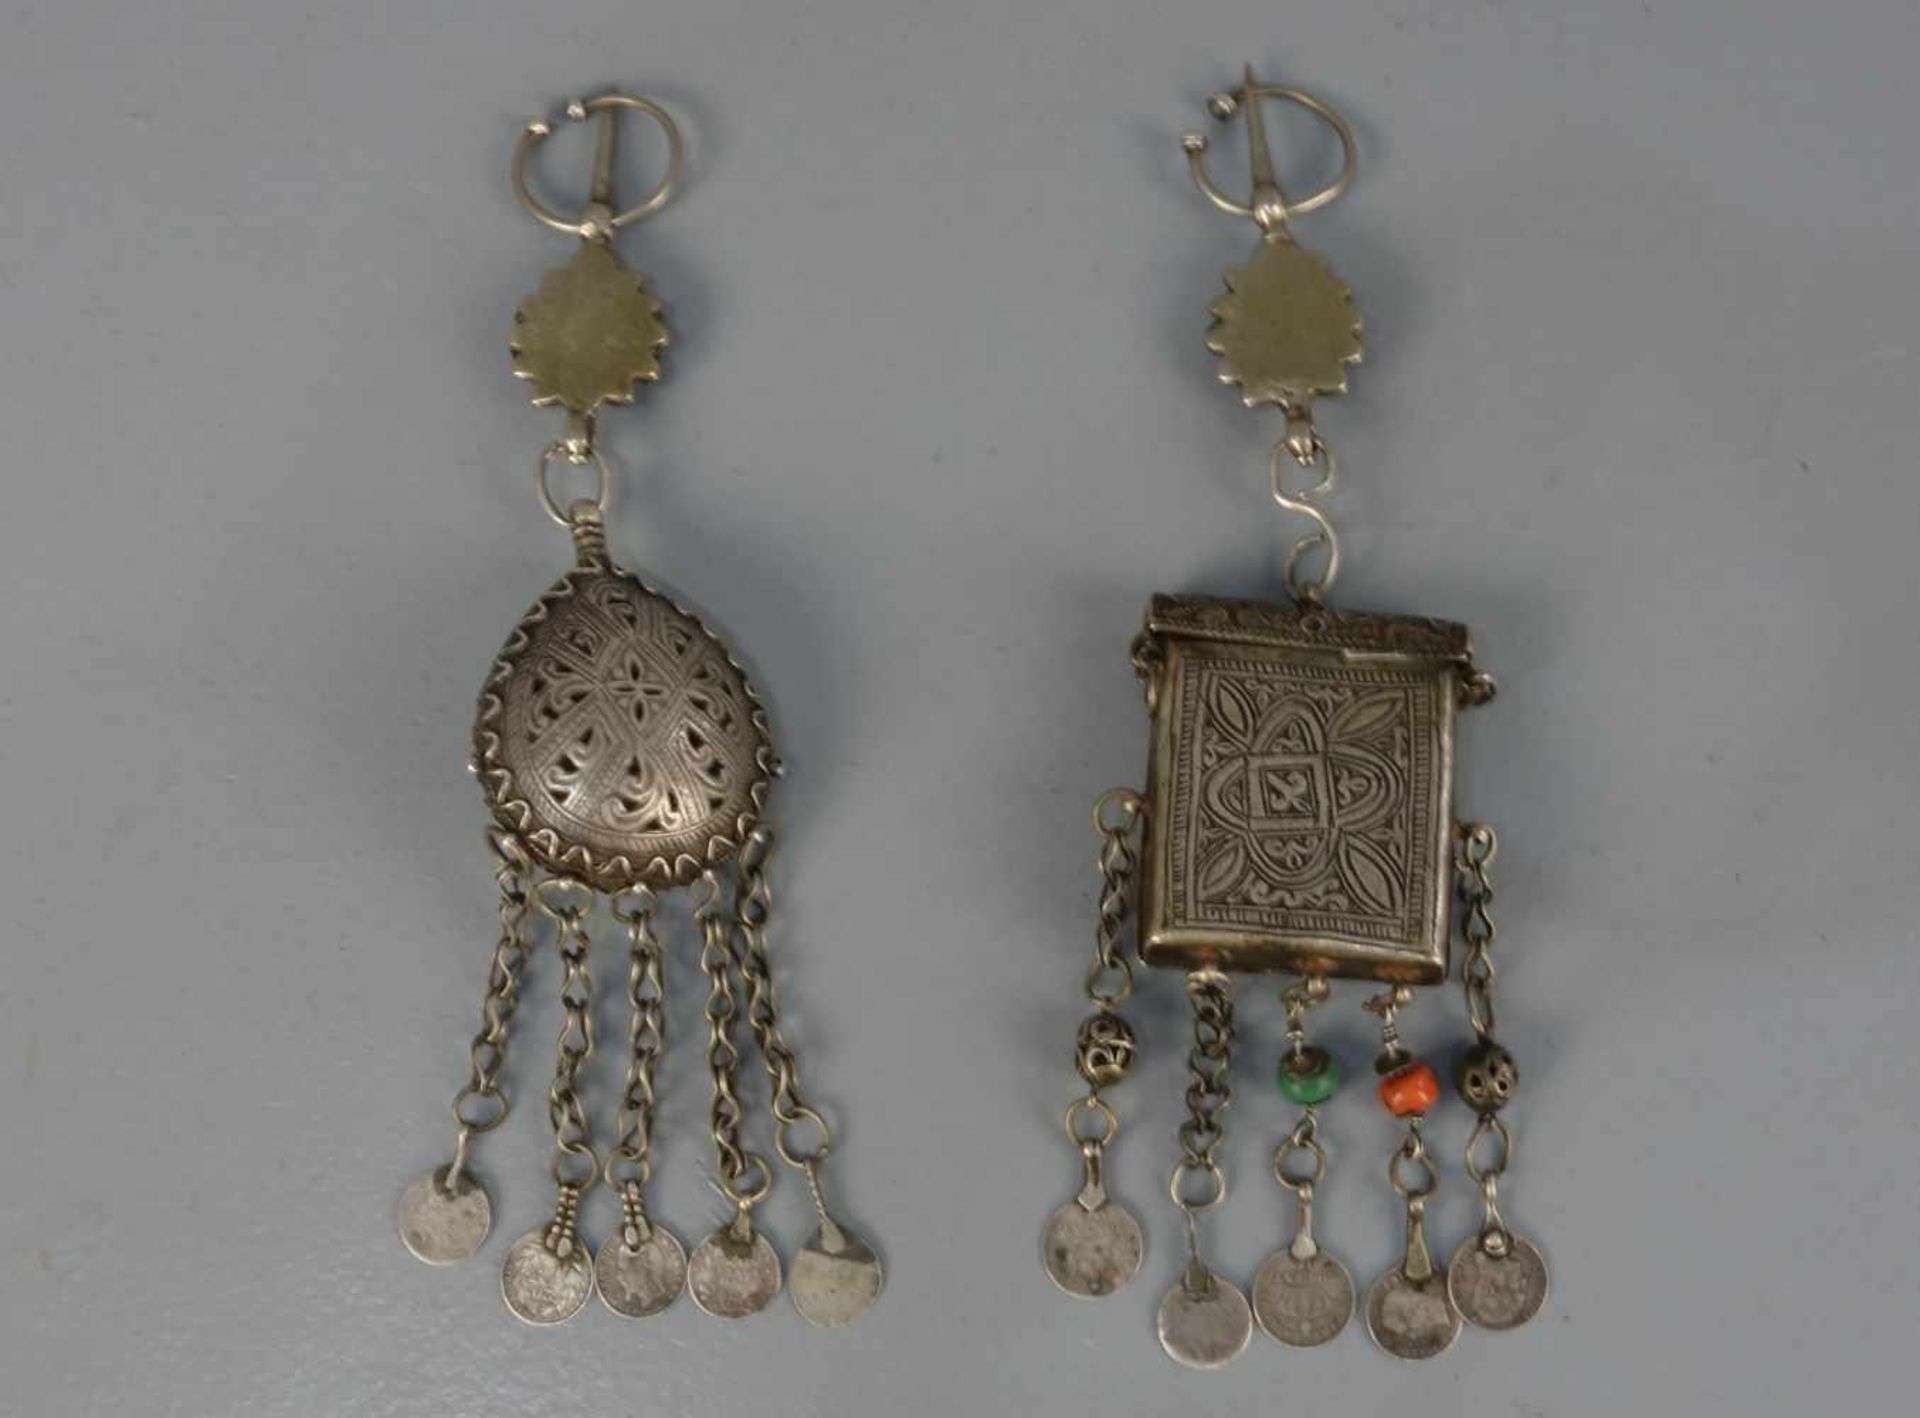 BERBER-SCHMUCK: MÜNZFIBELN / oriental jewellery with french coins, Marokko, Silber, Glas, Stein ( - Bild 2 aus 2